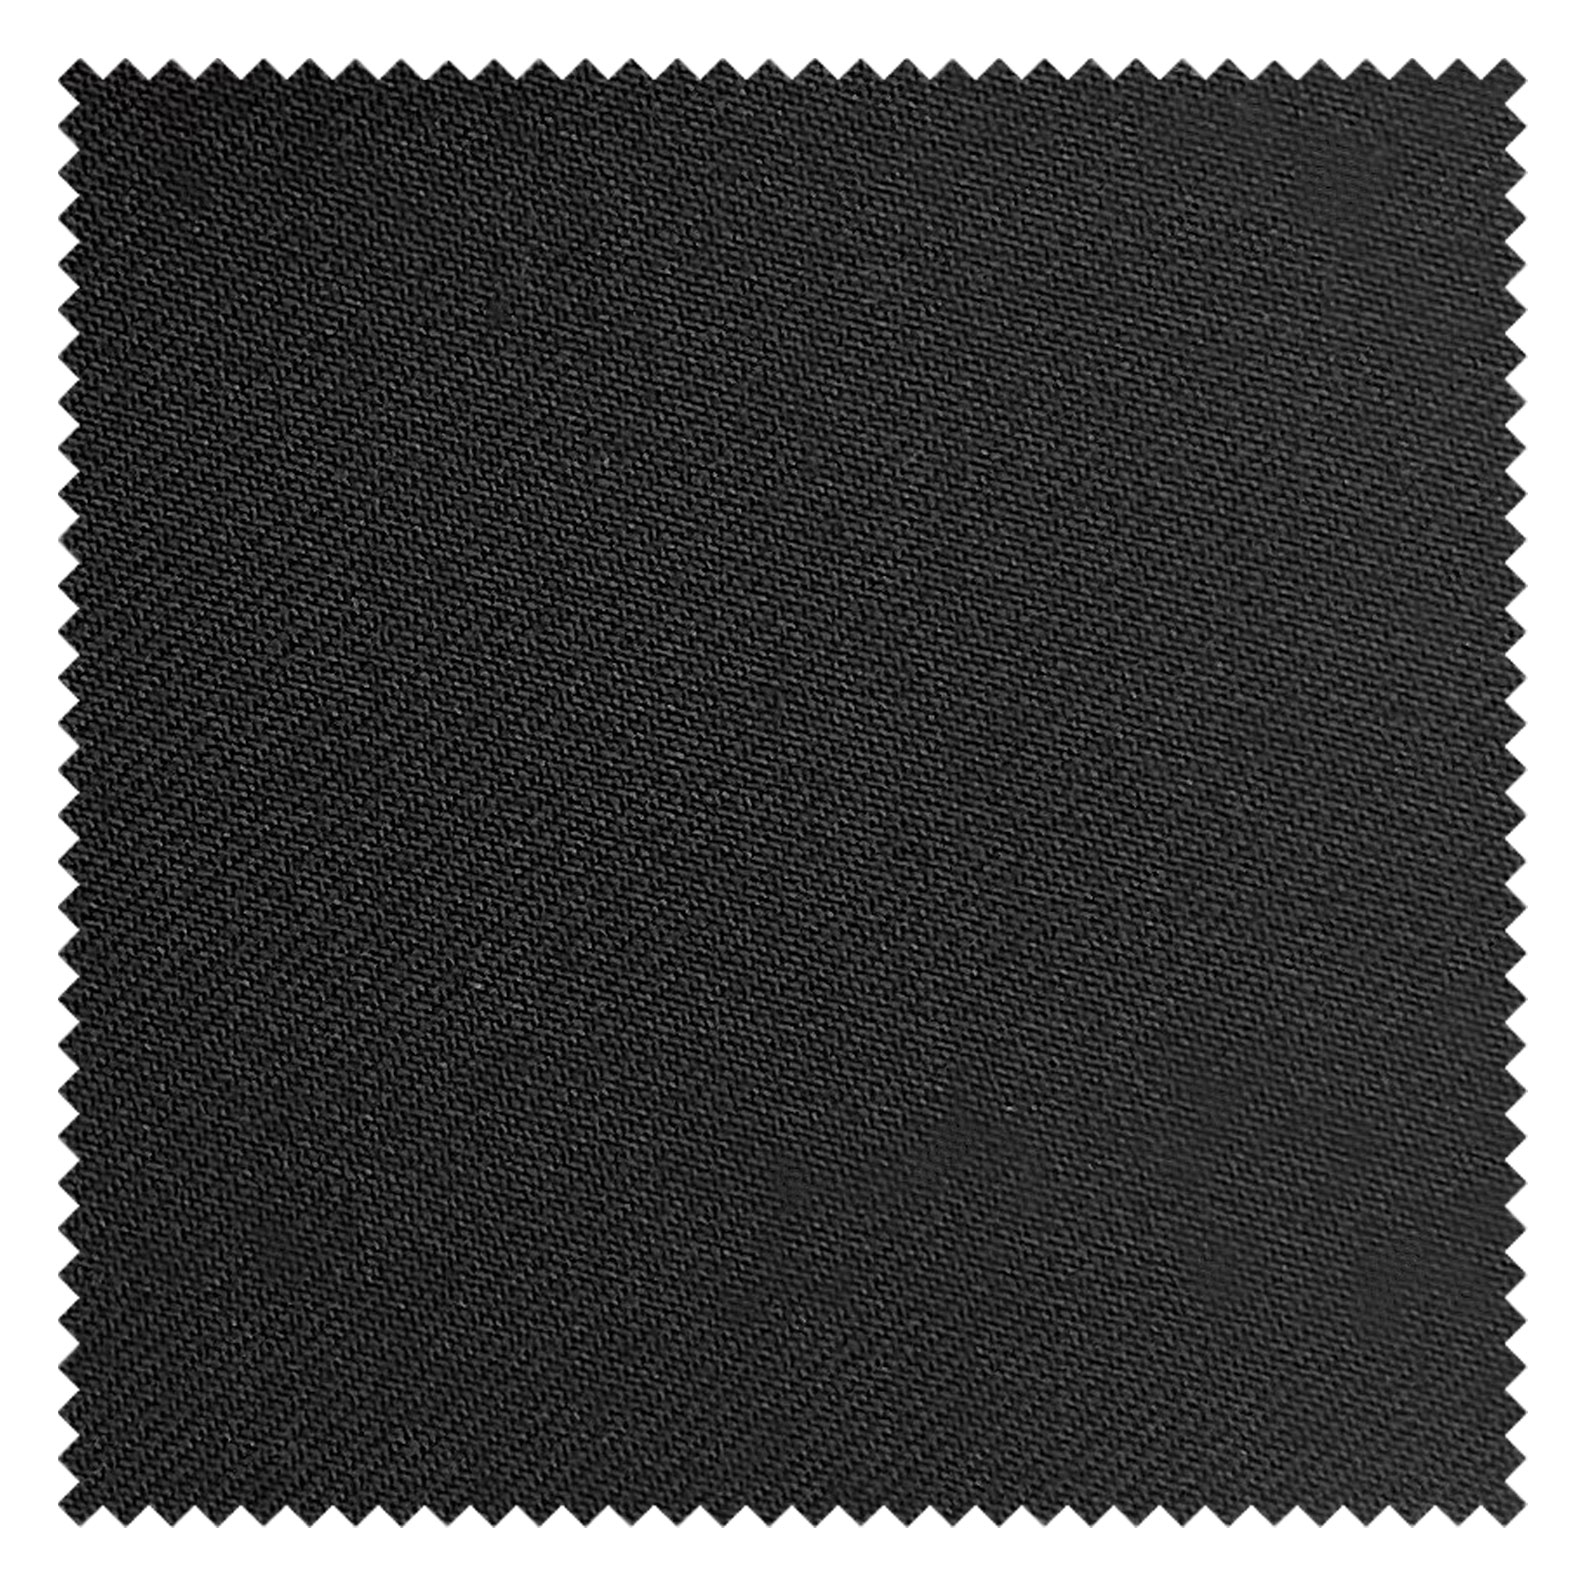 KINGMAN Cashmere Wool Fabric Royal Elegant JET BLACK ผ้าตัดชุดสูท กางเกง ผู้ชาย สีดำสนิท ผ้าตัดเสื้อ ยูนิฟอร์ม ผ้าวูล ผ้าคุณภาพดี กว้าง 60 นิ้ว ยาว 1 เมตร